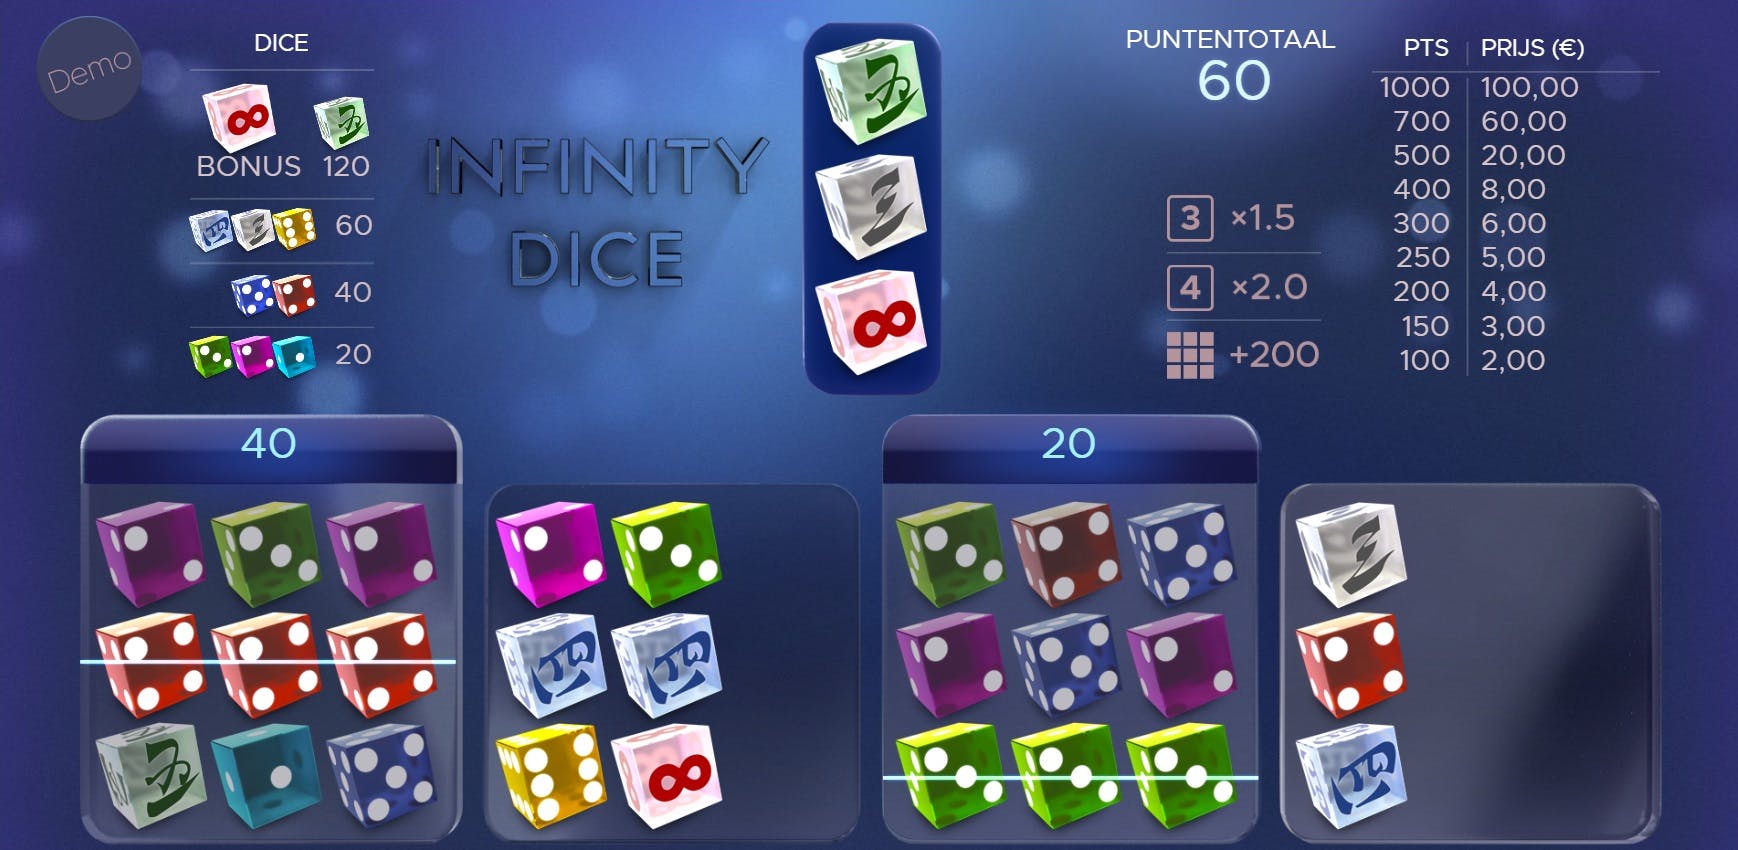 Airdice Infinity Dice Game - Test et astuces